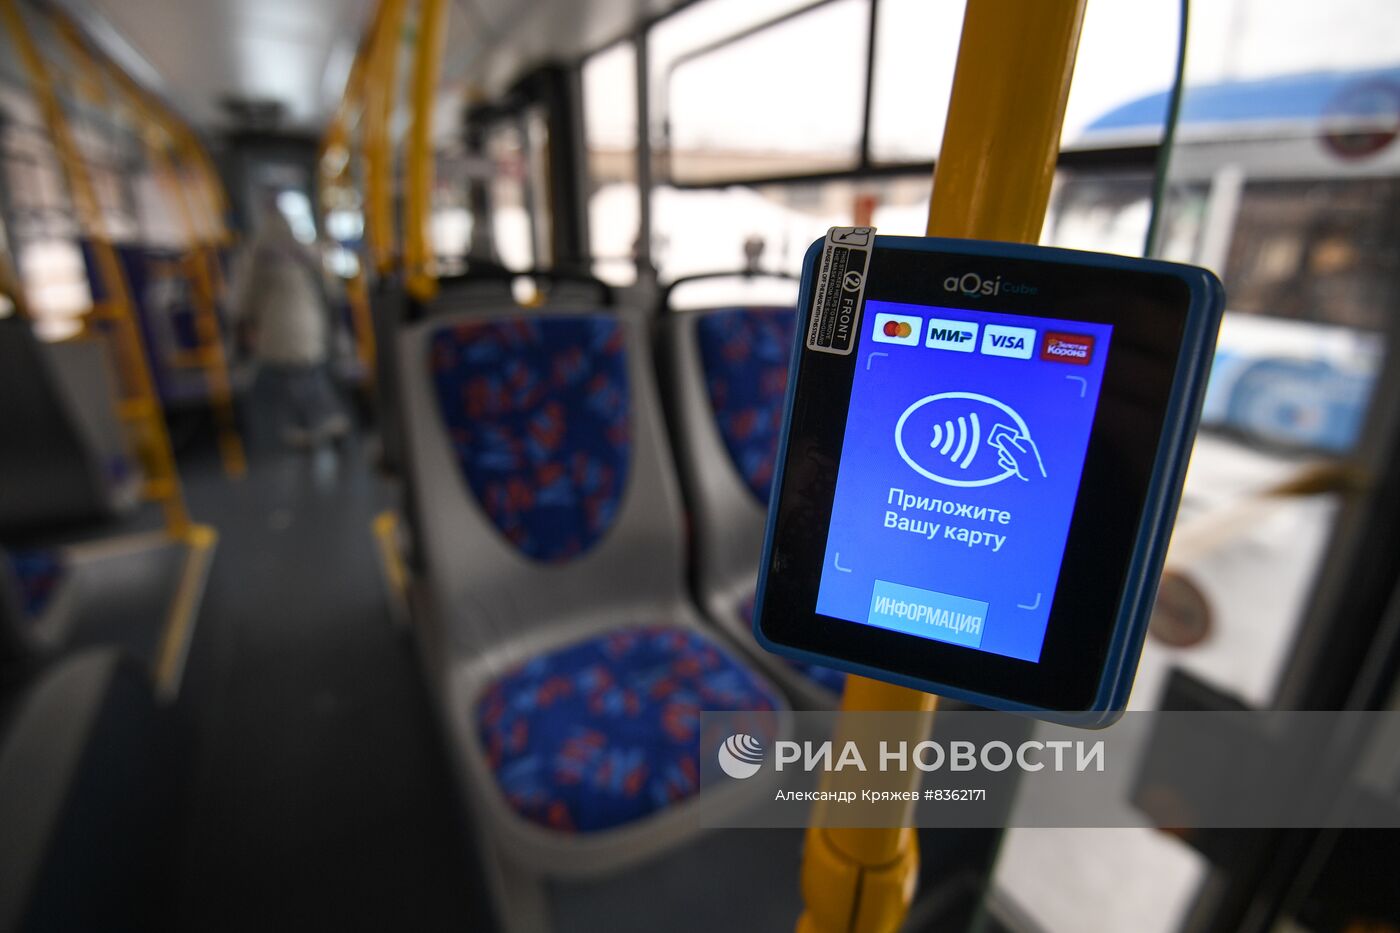 Партия новых троллейбусов поступила в Новосибирск